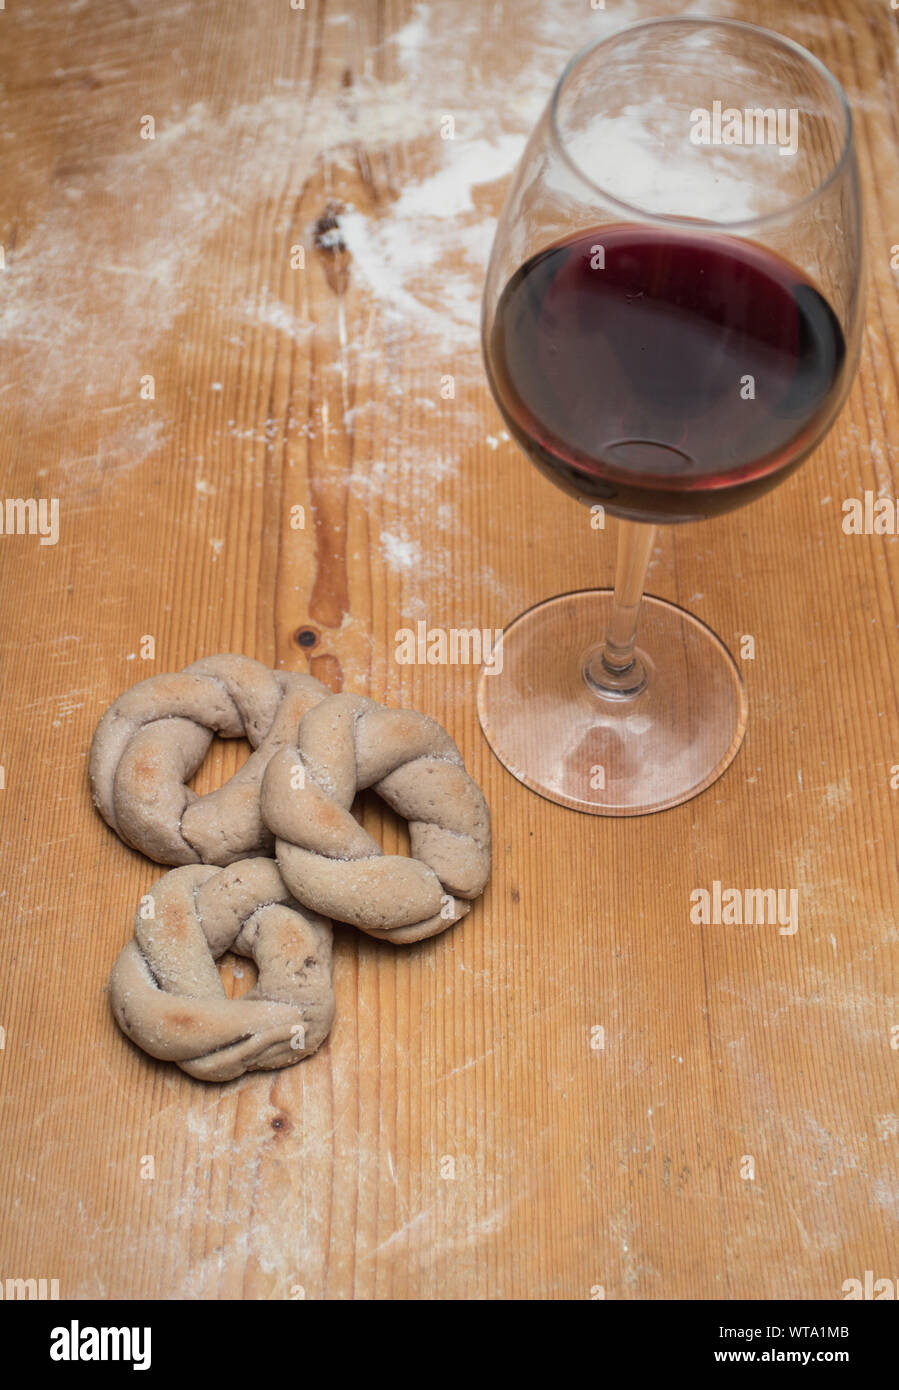 Italienischer Rotwein ciambelline Kekse, gekocht, mit Rotwein Glas auf Holz- Bemehlten tisch Hintergrund. Vertikale Ausrichtung. Stockfoto